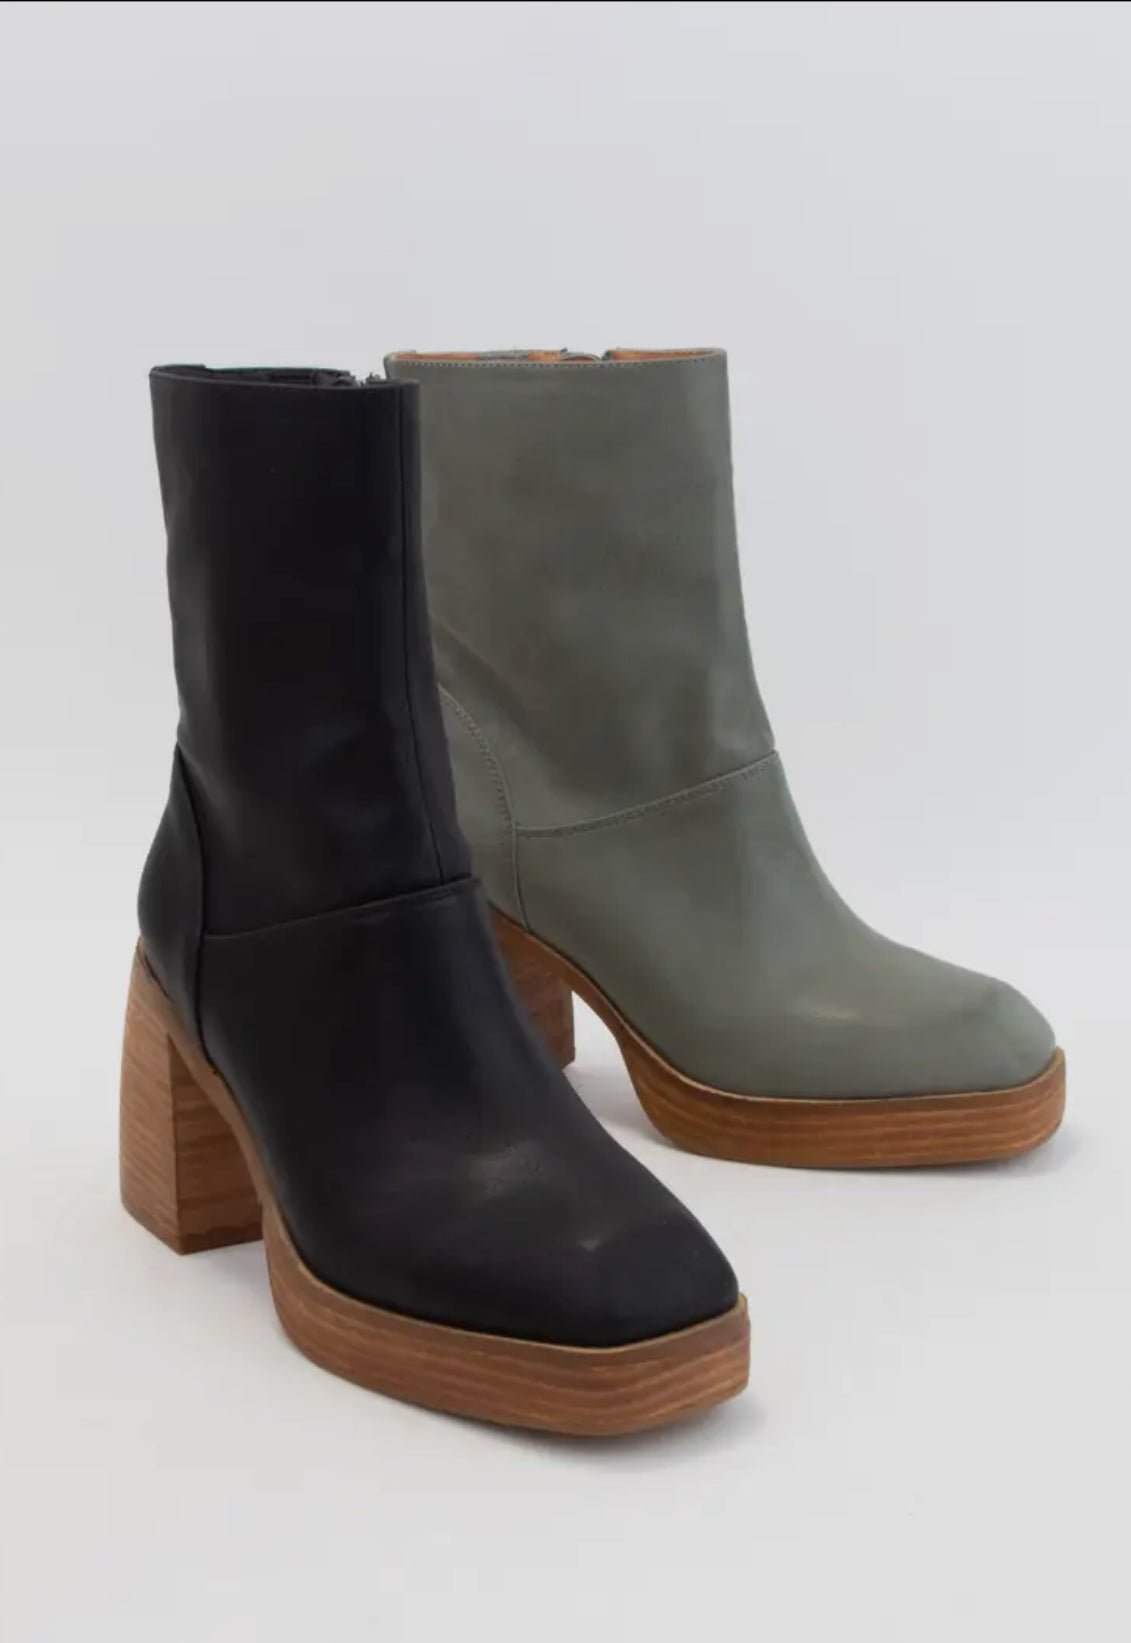 Chunky Angular toe platform boots - moss - Blue Sky Fashions & Lingerie